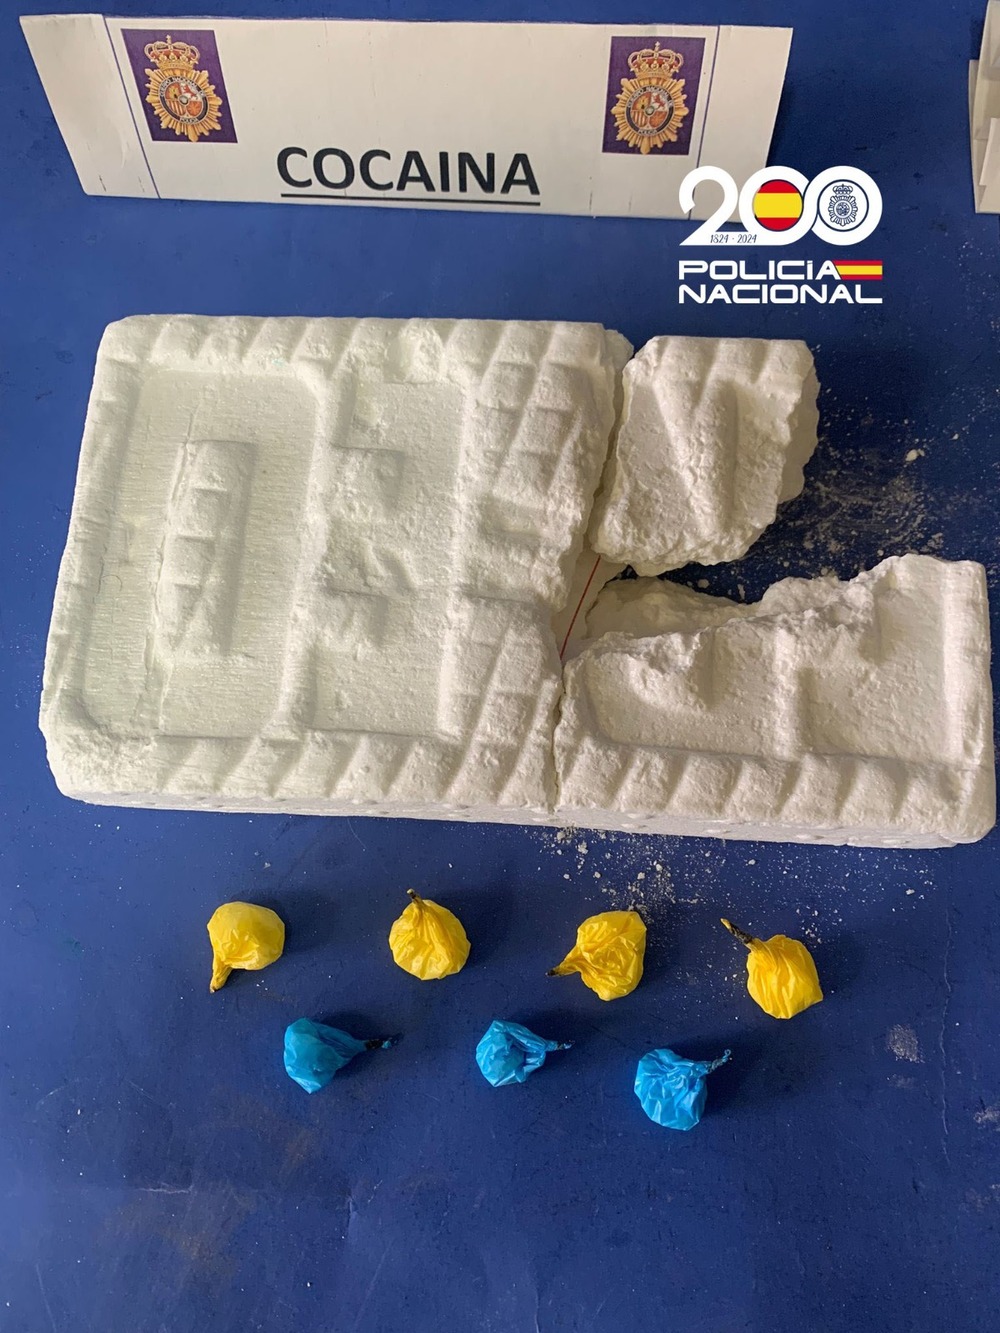 La Policía Nacional ha intervenido un kilo de cocaína base al presunto principal importador de crack en Burgos capital.